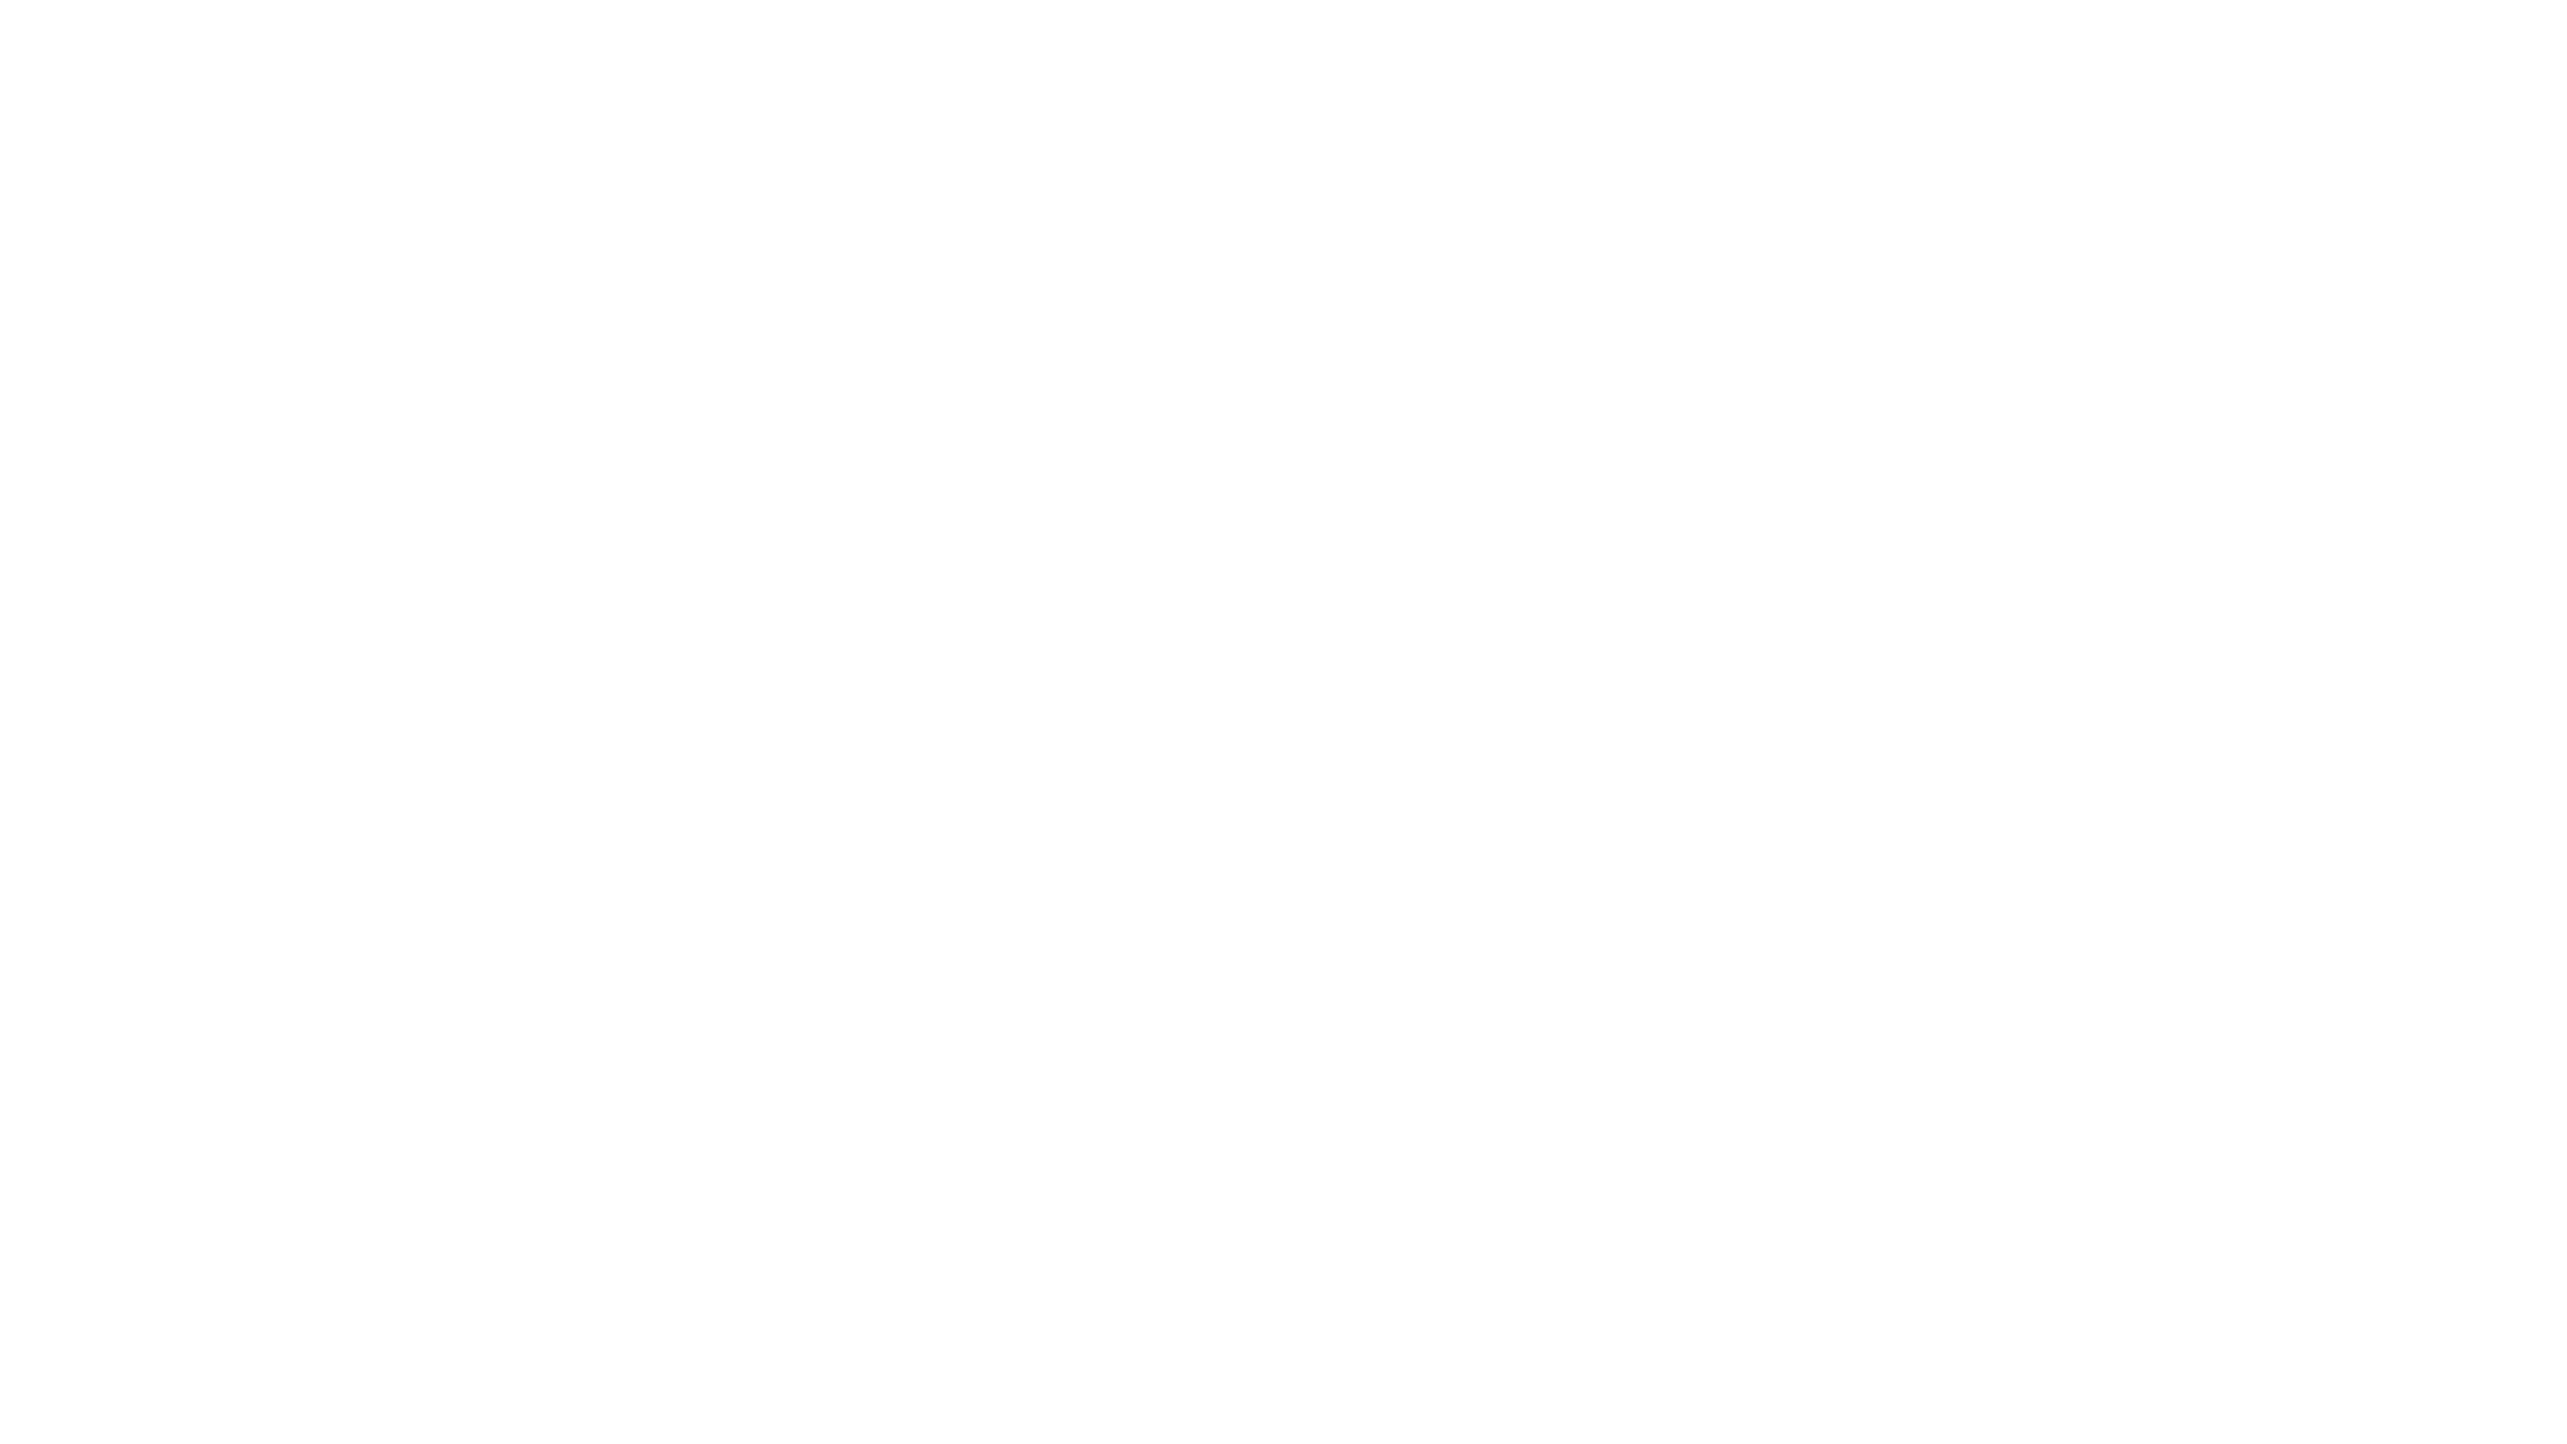 AWD Bank